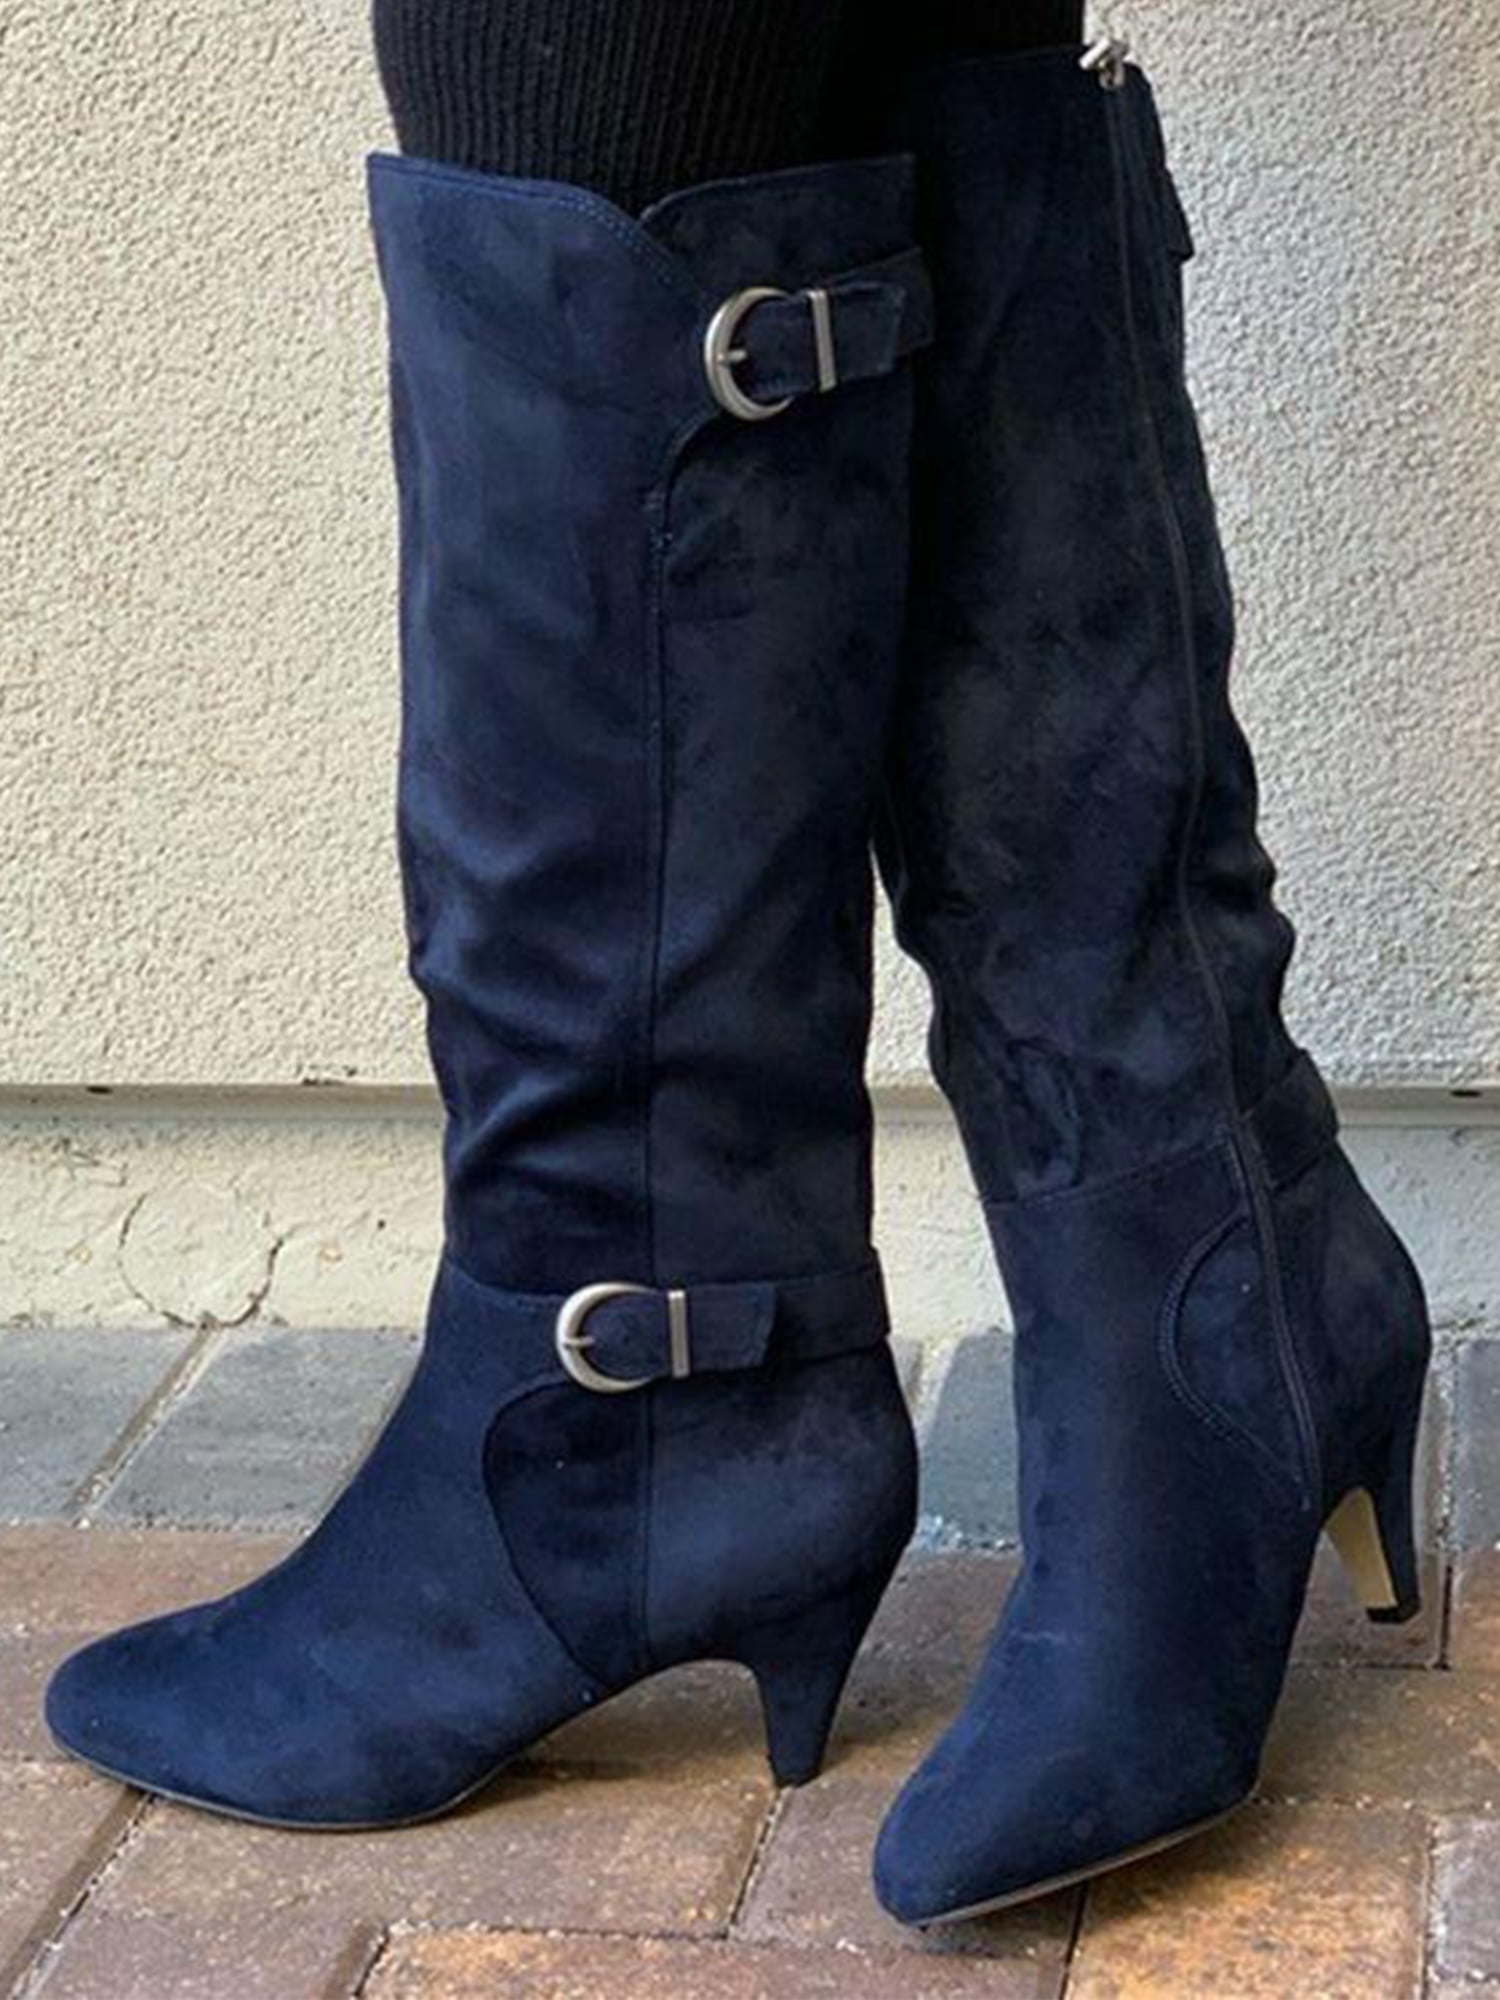 navy blue dress boots womens